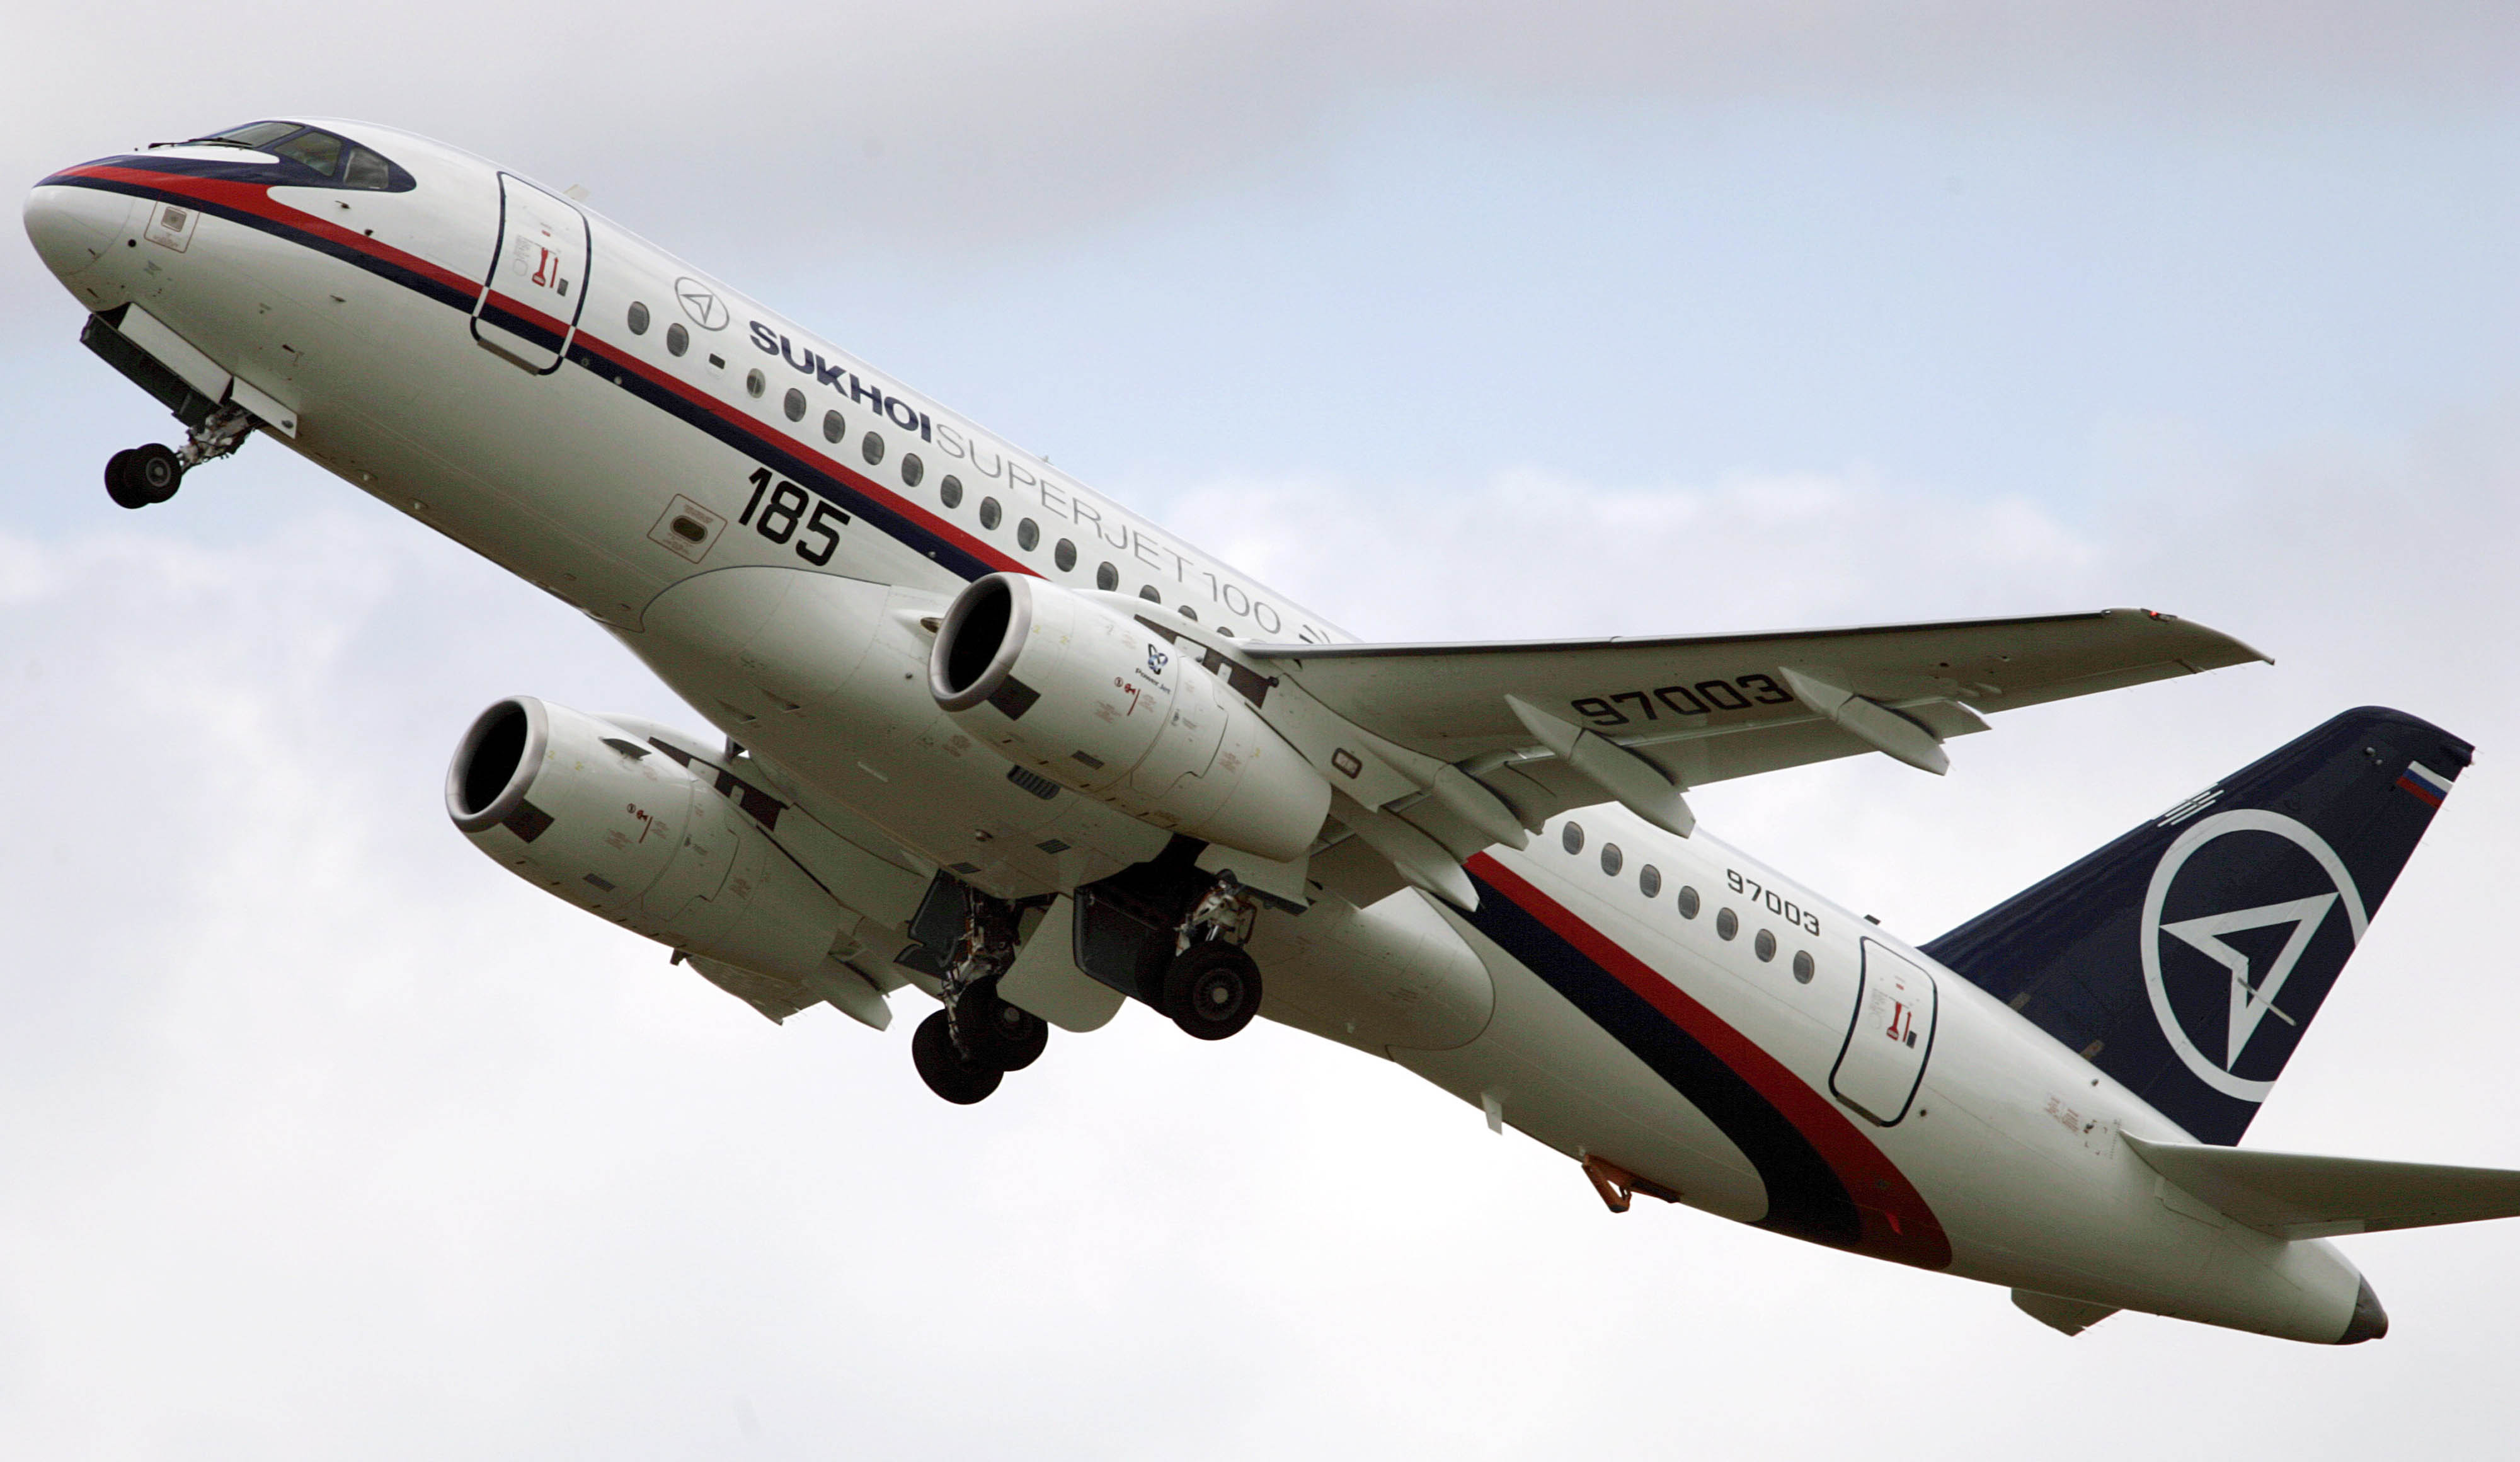 Det ryska jetplanet är enligt indonesiska myndigheter nu funnet.